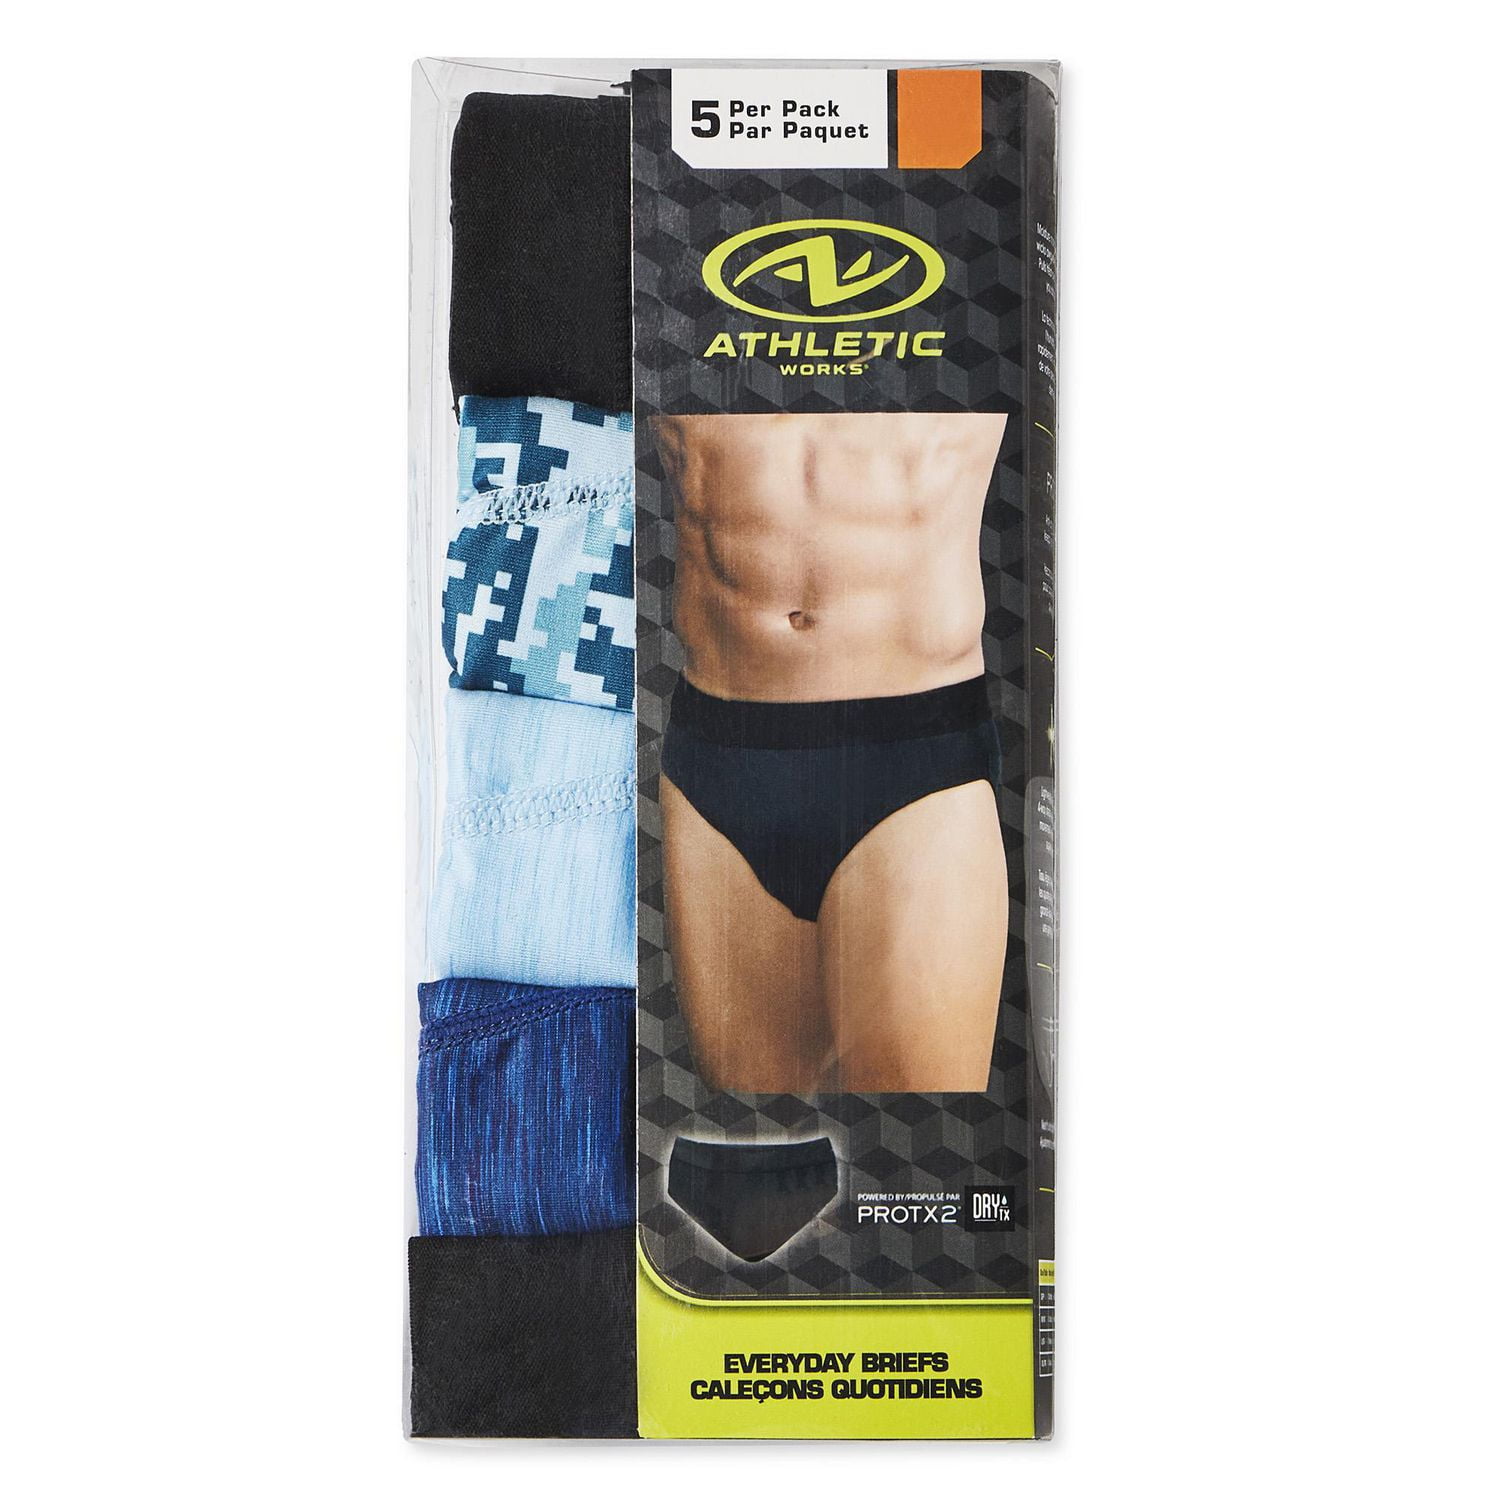 Spa Stretch Underwear 10's – i-Spa